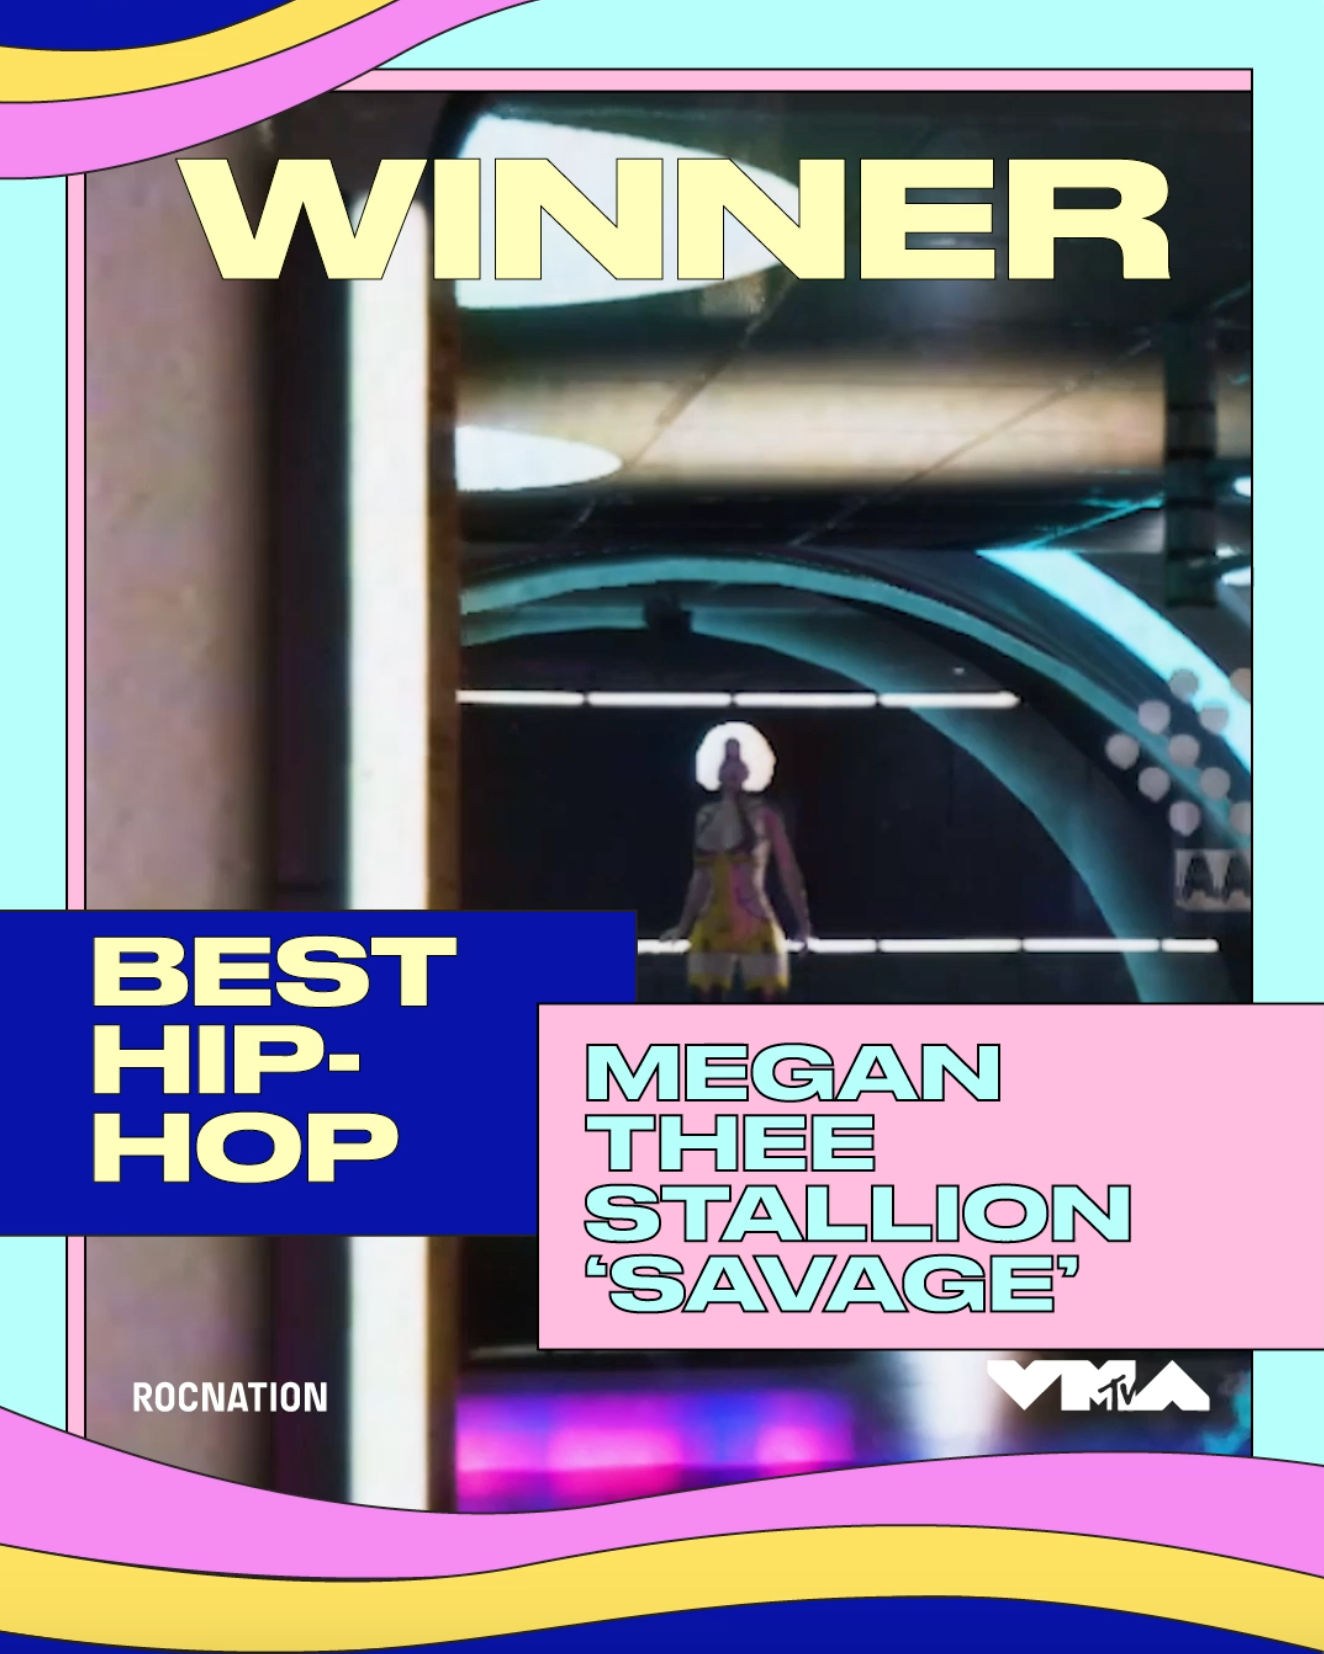 Megan Thee Stallion VMA 2020 Award Winner